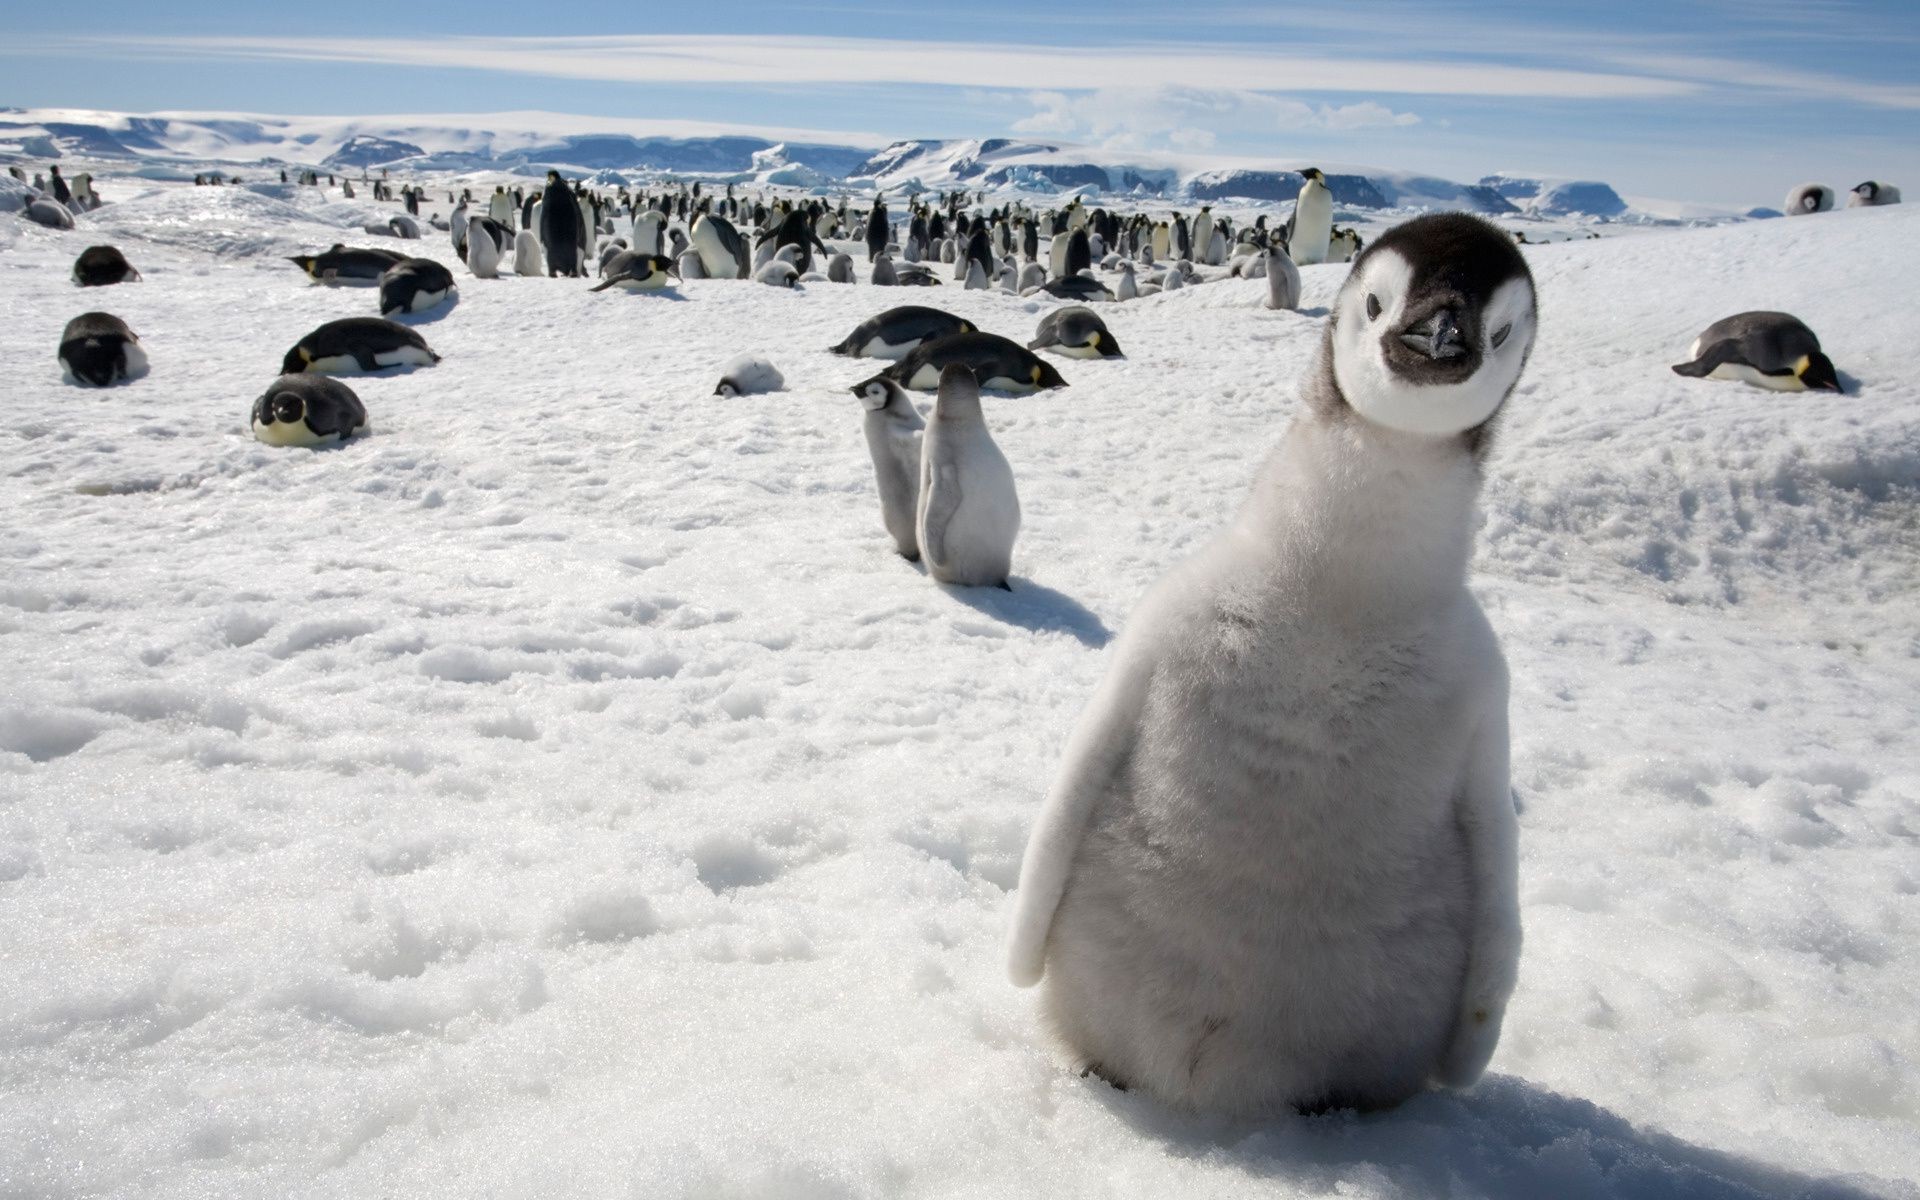 животные снег зима холодная морозный лед полярный птица океан антарктике дикой природы замороженные природа море пингвины животное на открытом воздухе млекопитающее воды мороз